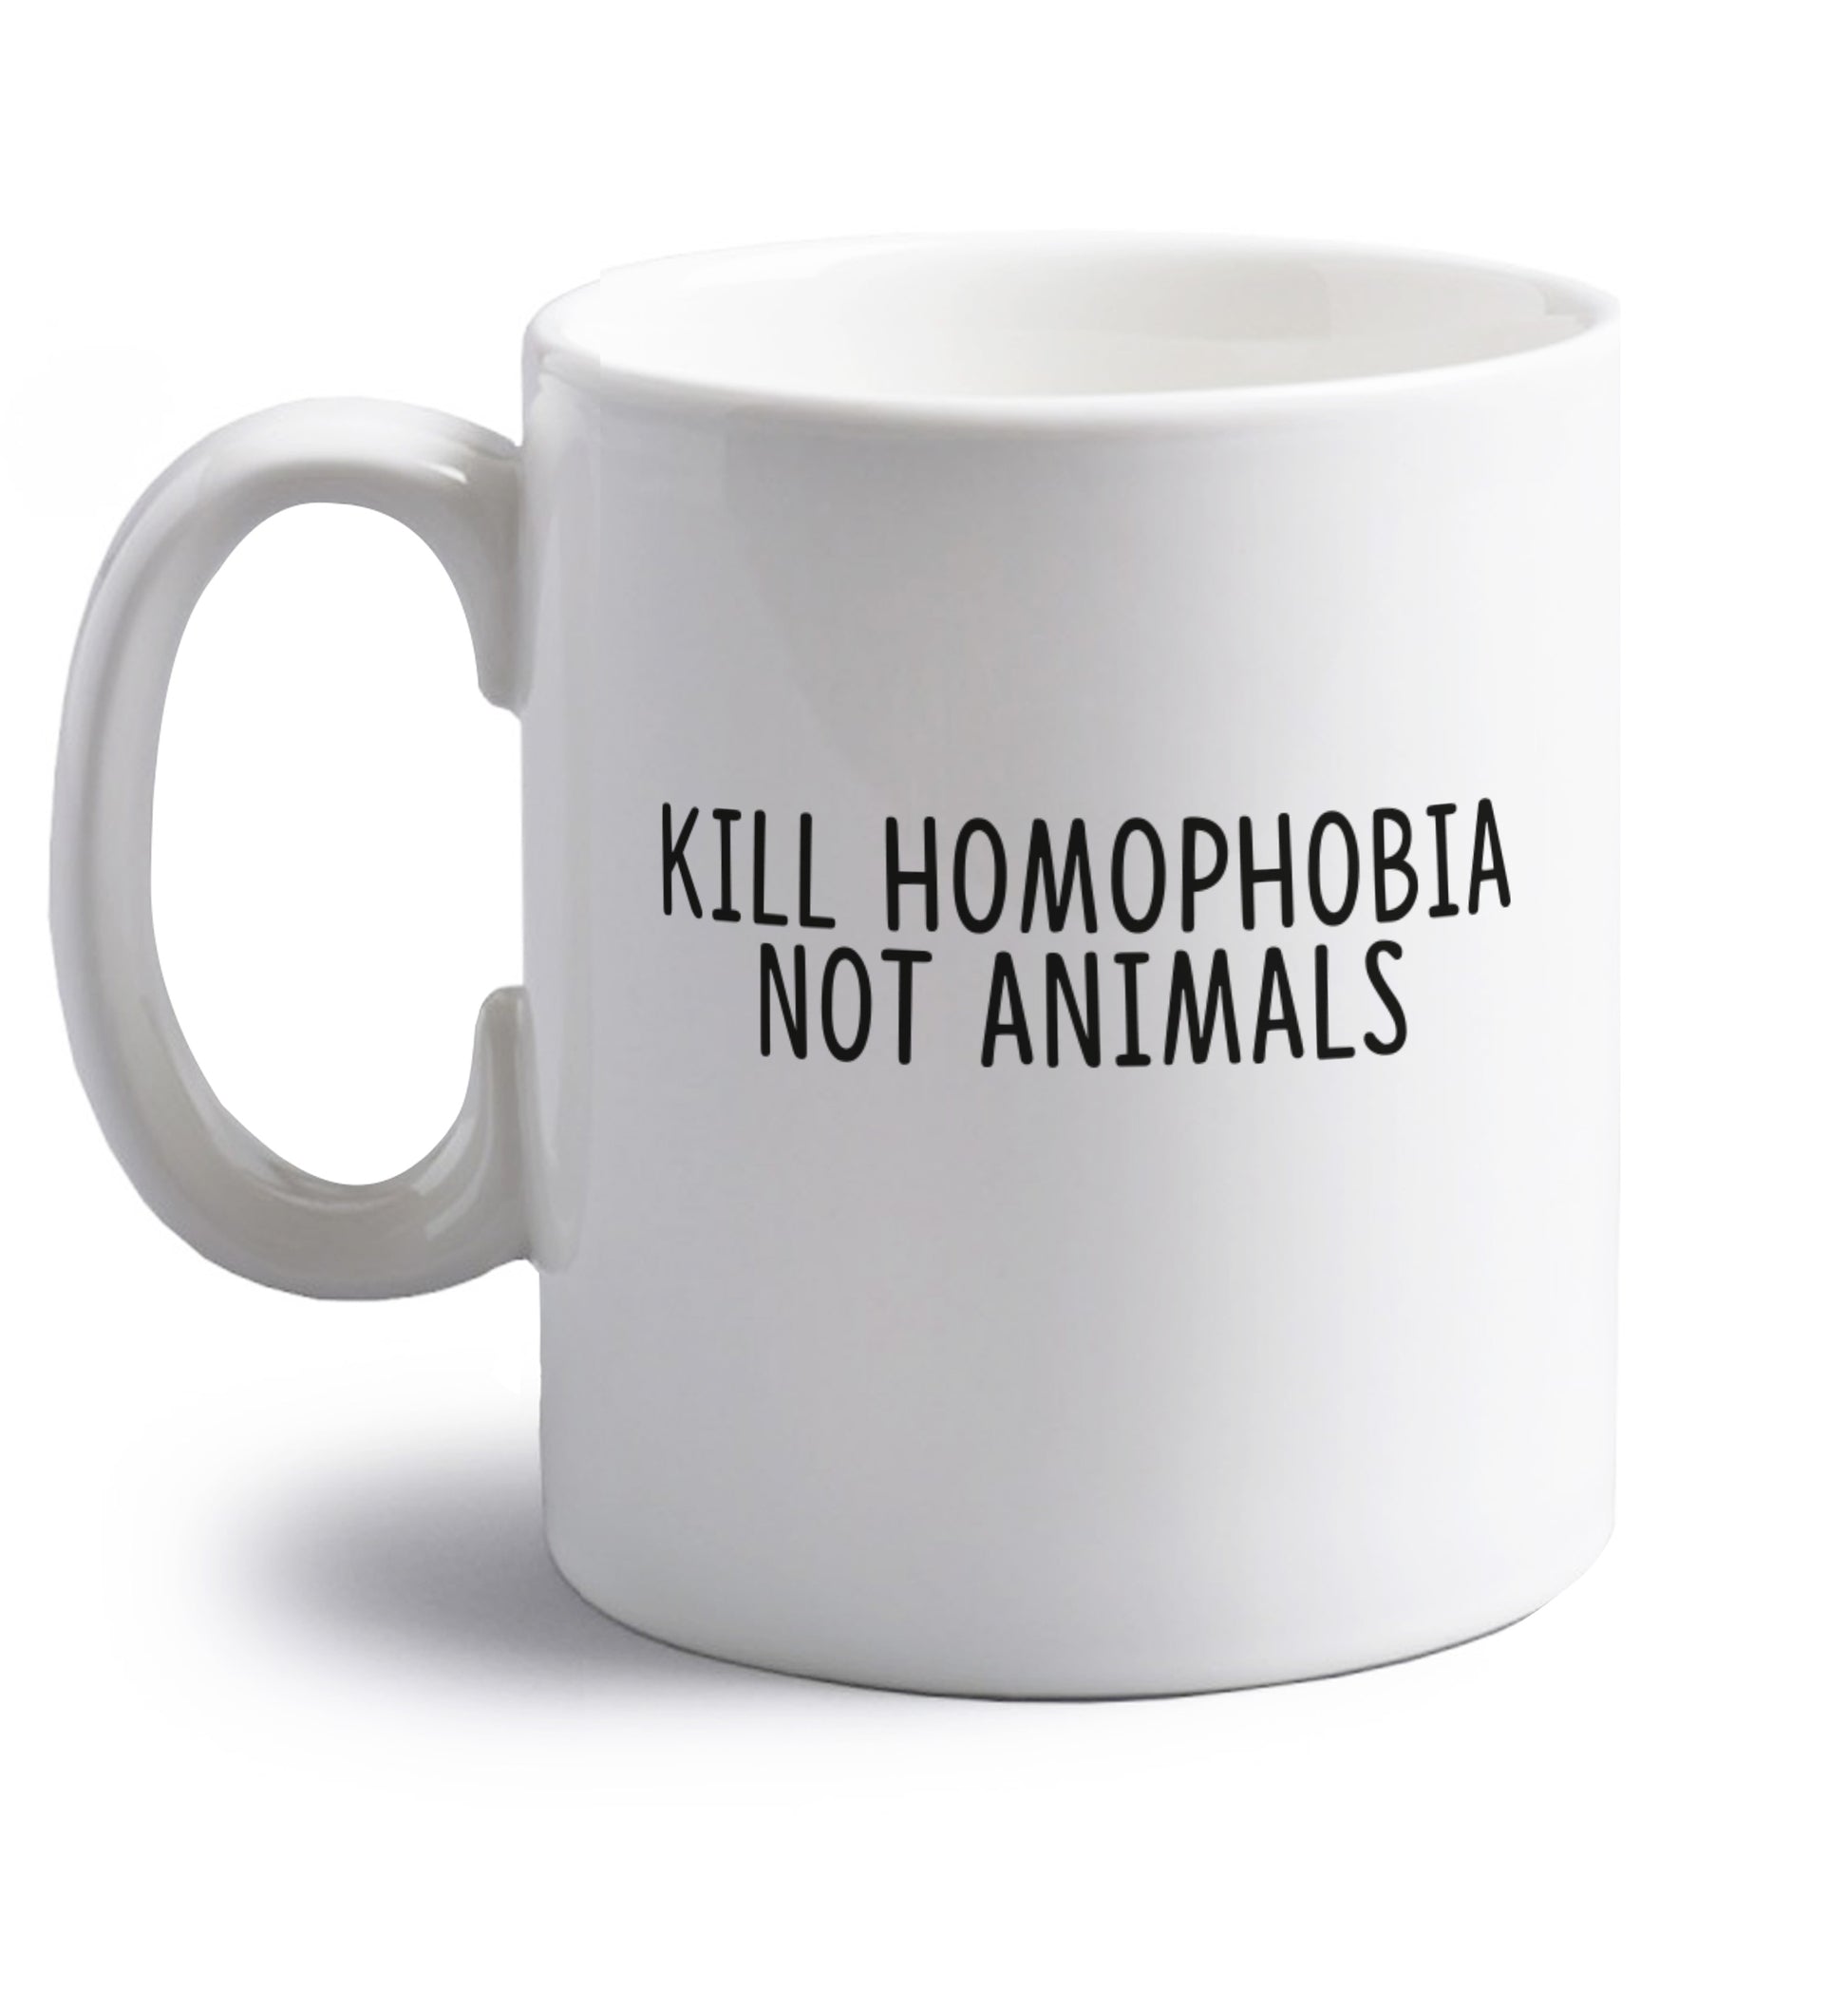 Kill Homophobia Not Animals right handed white ceramic mug 